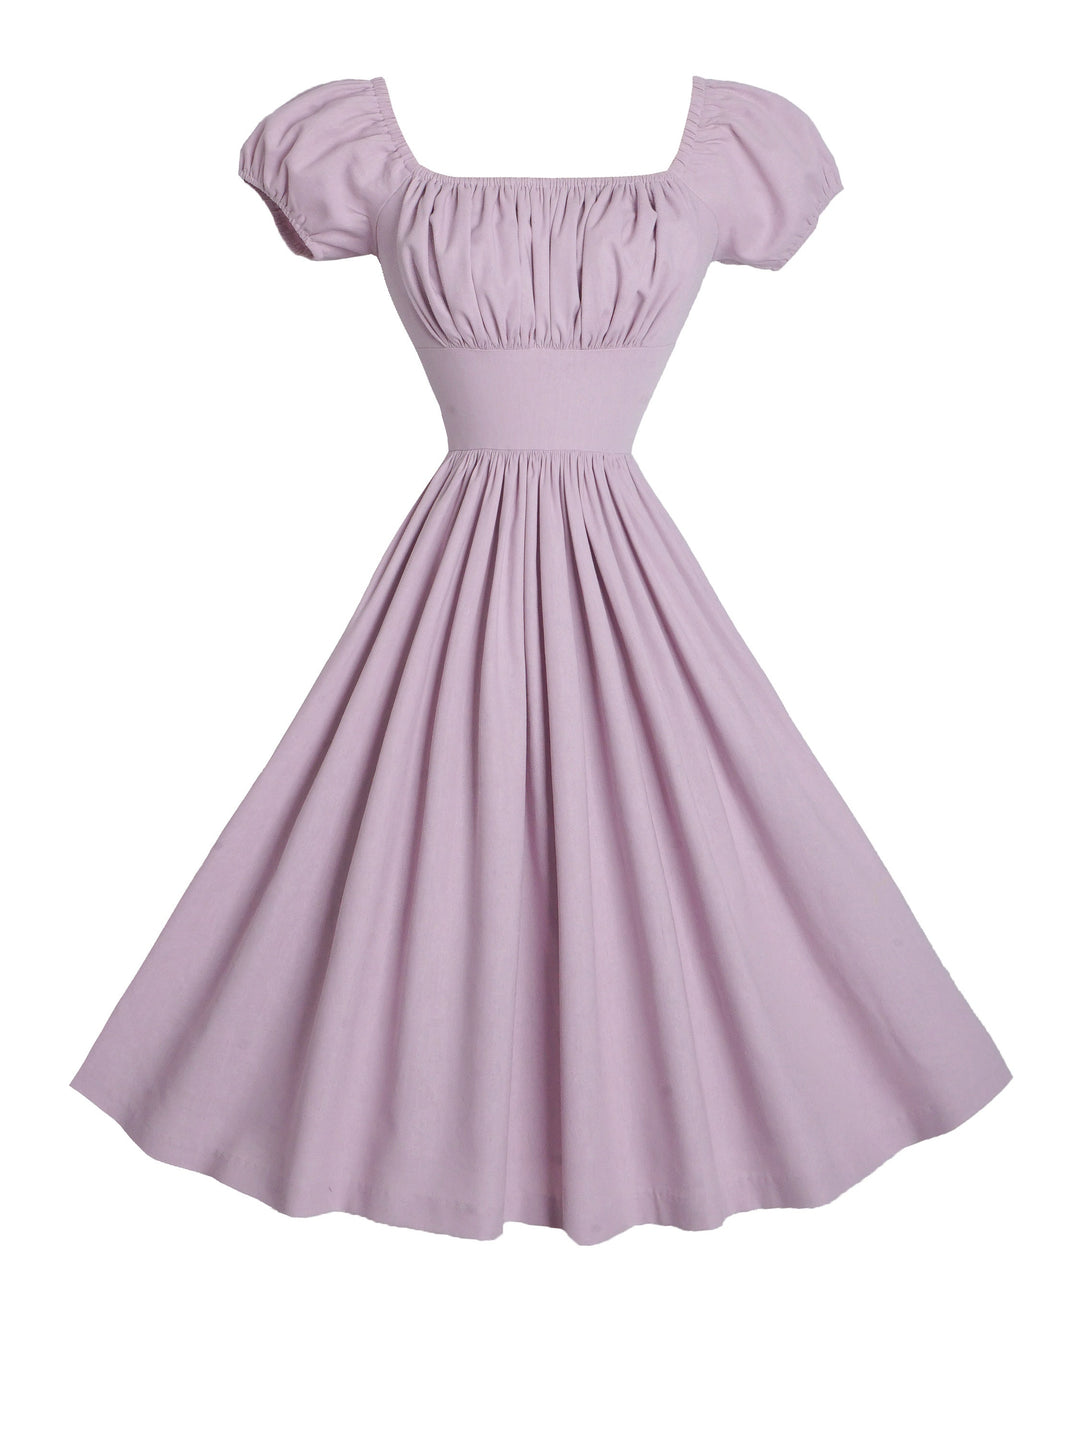 MTO - Loretta Dress in Lilac Purple Linen